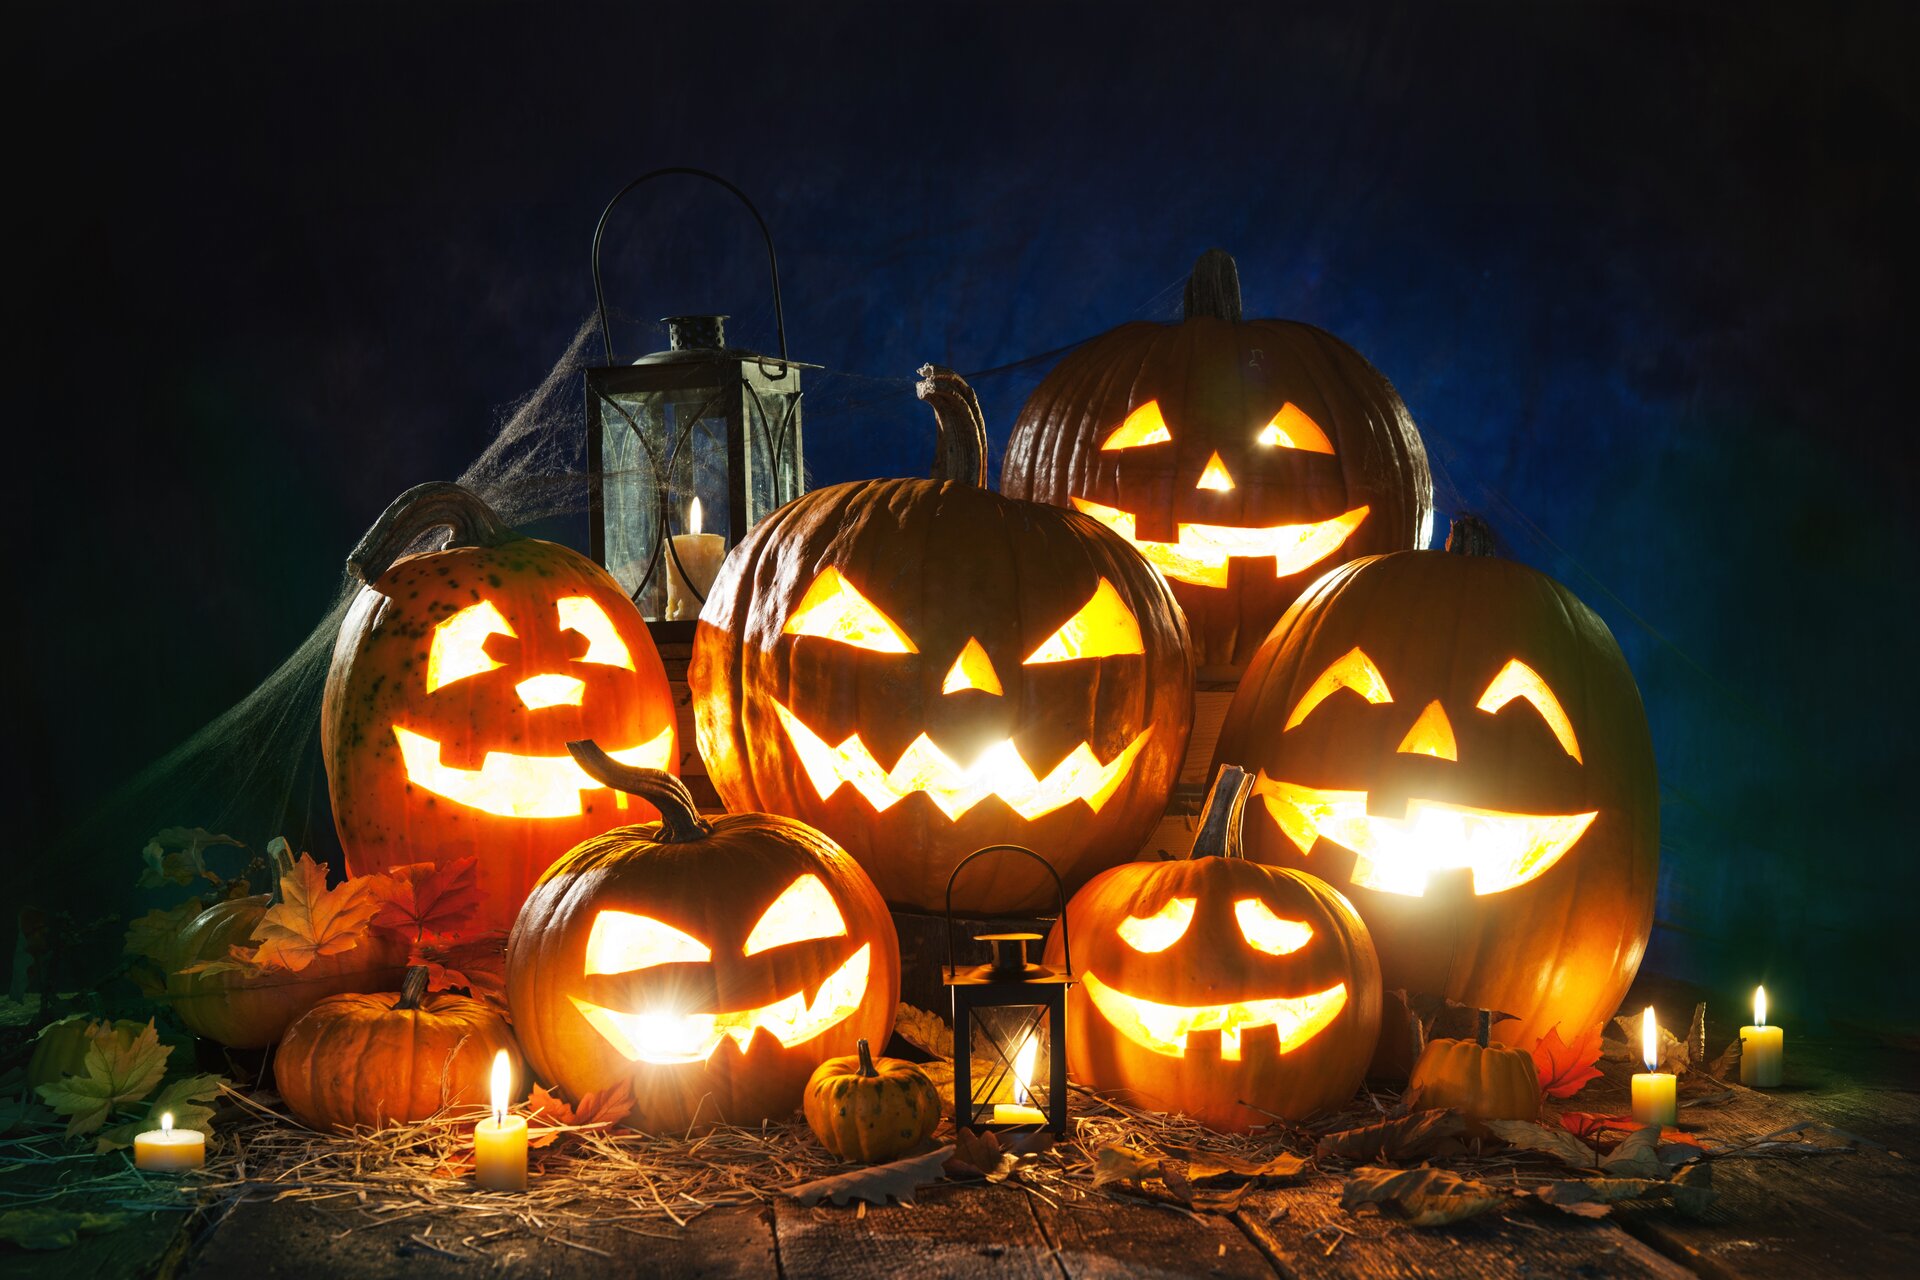 Ilustracja przedstawia sześć współcześnie wydrążonych dyń na Halloween. Są one ułożone na drewnianej podłodze. W dyniach znajdują się odpalone świece. Dookoła ustawione są lampy oraz palące się świeczki.